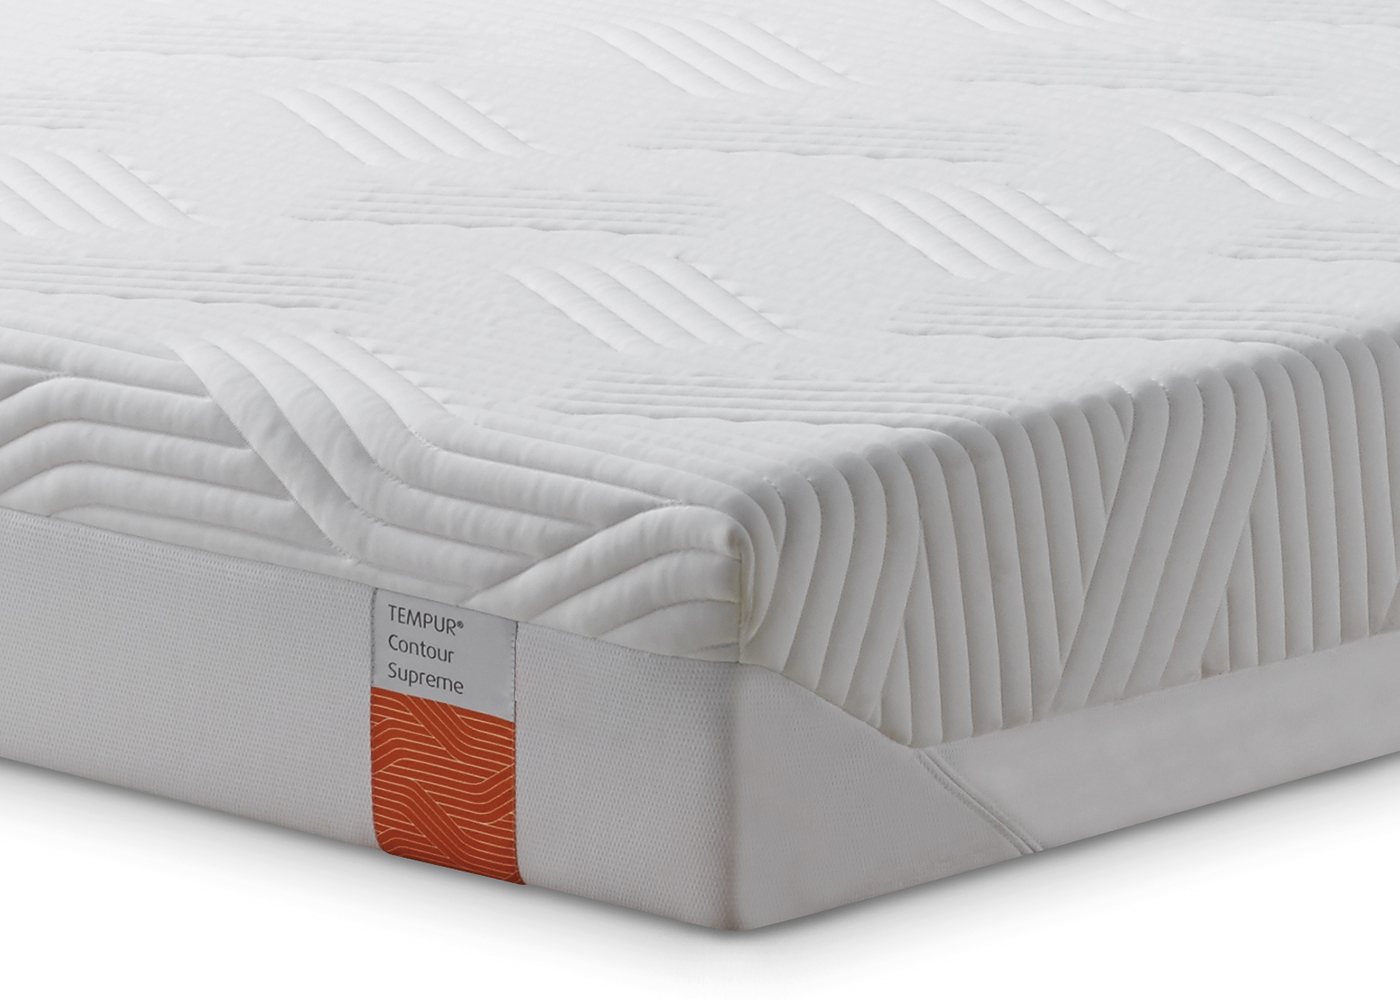 tempur-contour supreme king mattress